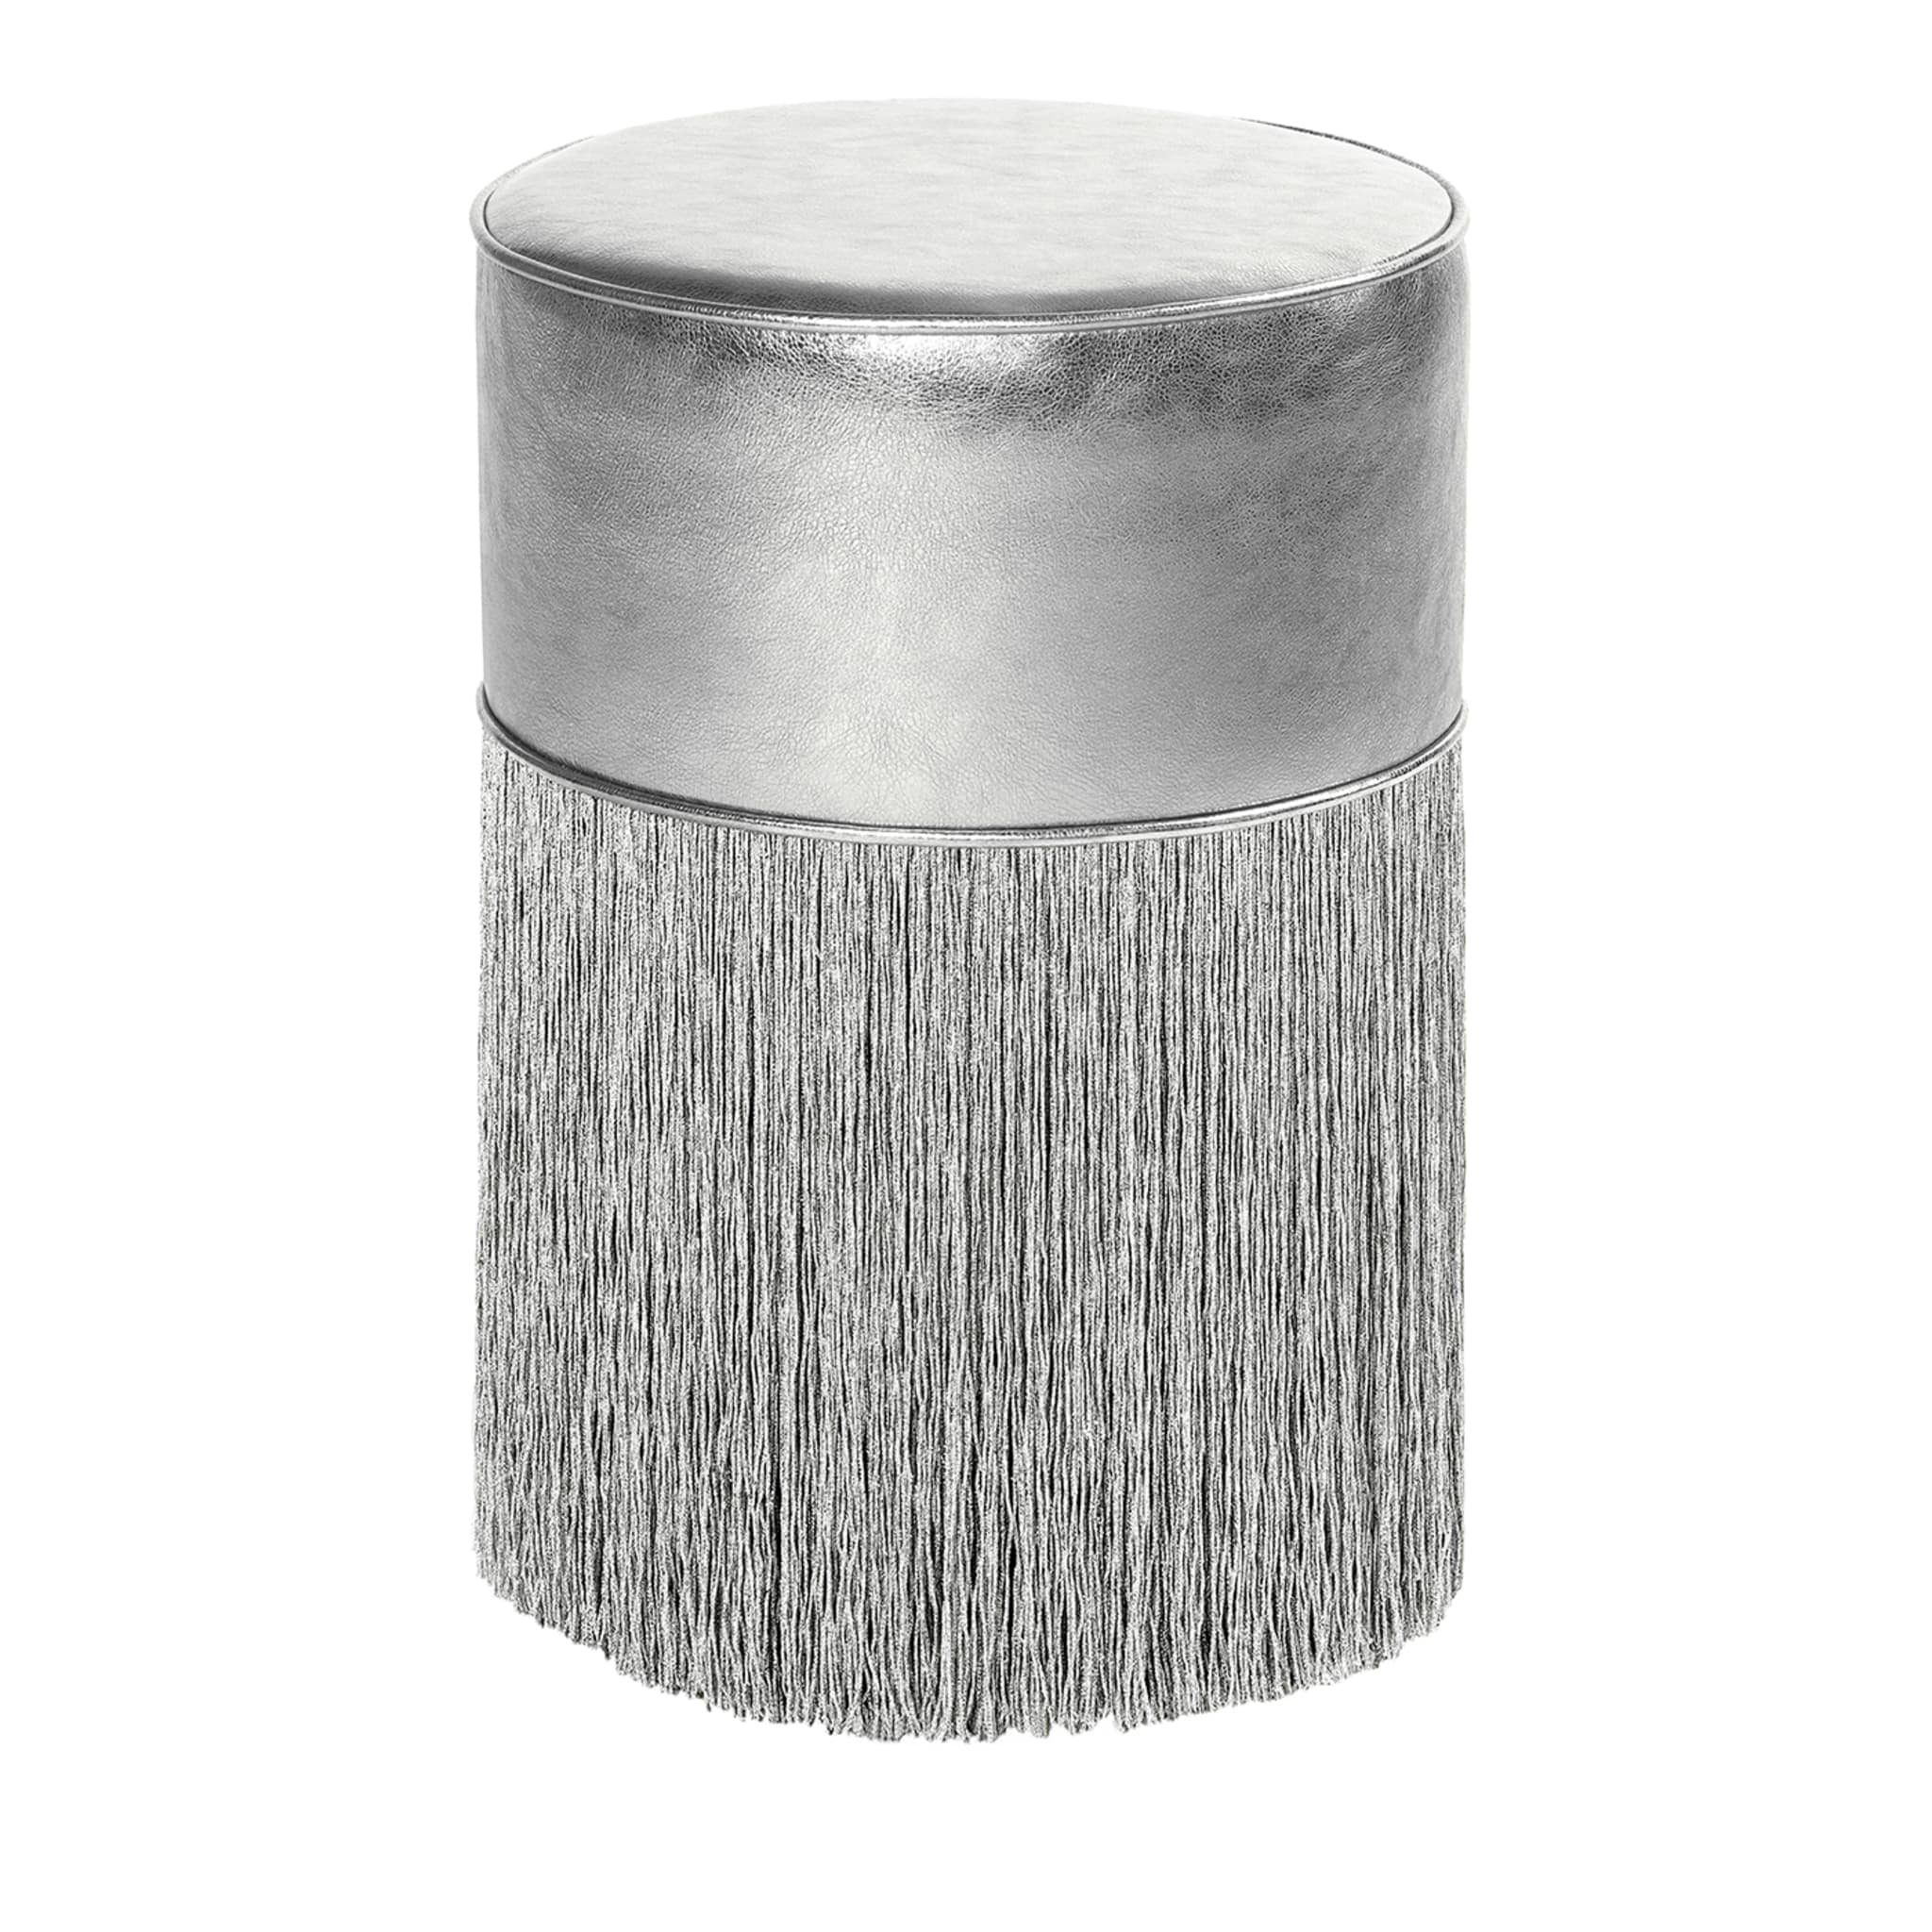 Silberglänzender Pouf aus metallischem Leder von Lorenza Bozzoli - Hauptansicht